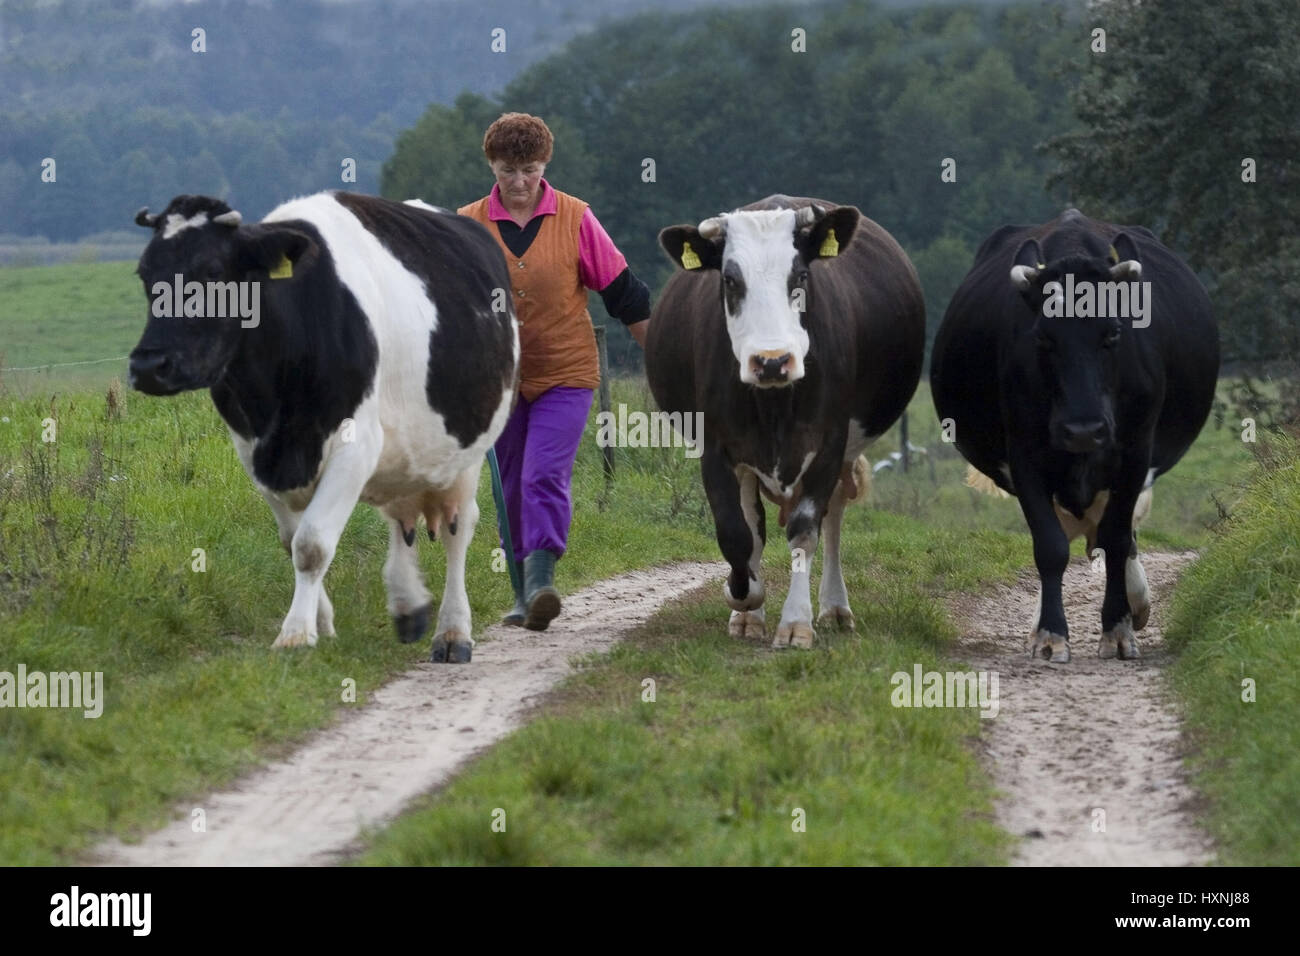 The Masurische farmer Skok Danuta does her cows home. Masuria Poland, Die Masurische Bäuerin Skok Danuta treibt ihre Kühe nach Hause.Masuren Polen Stock Photo